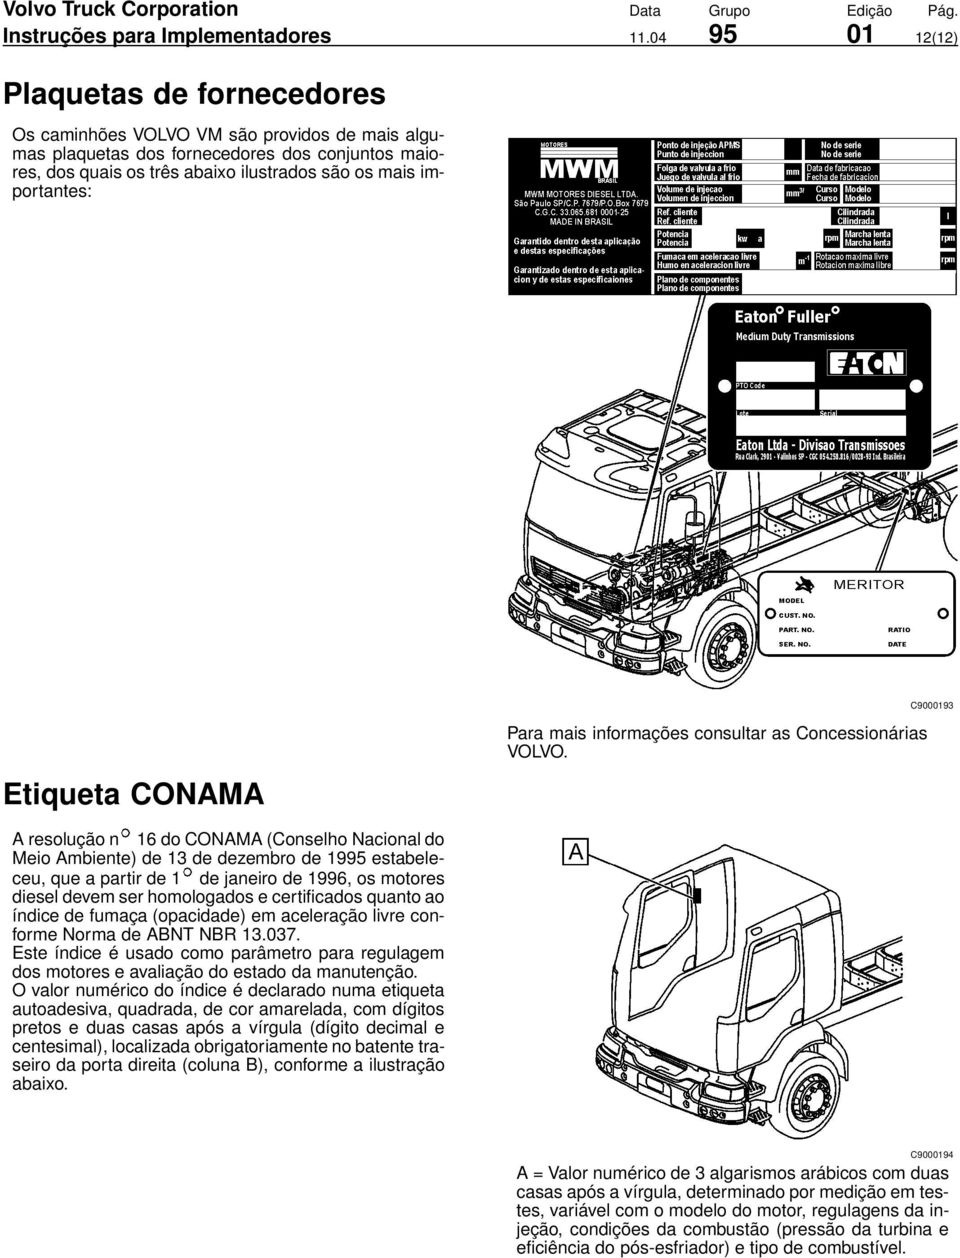 importantes: C9000193 Etiqueta CONAMA Para mais informações consultar as Concessionárias VOLVO.